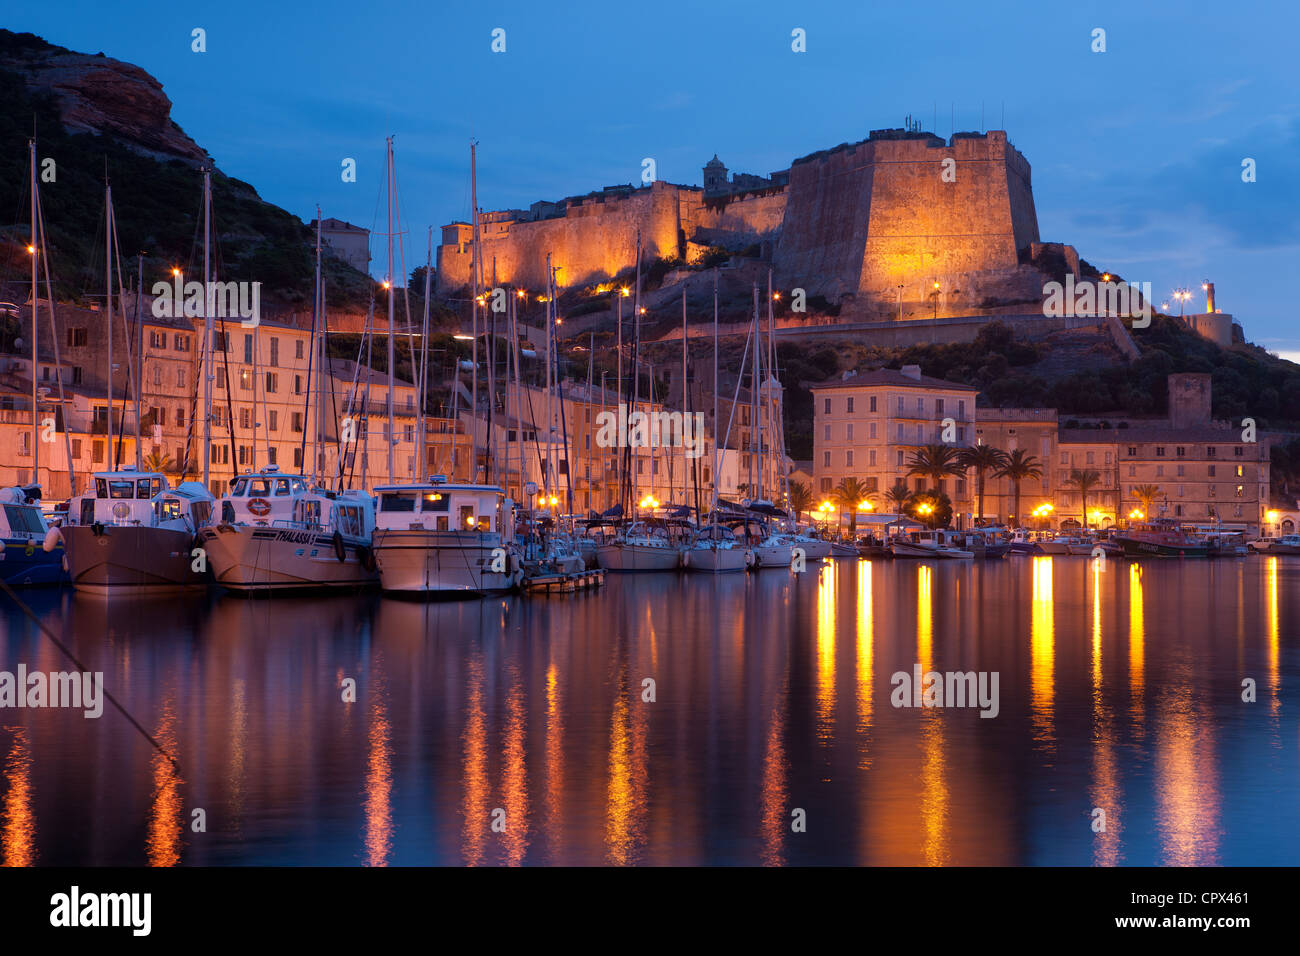 Le port et la Citadelle de Bonifacio, nuit, Corse, France Banque D'Images